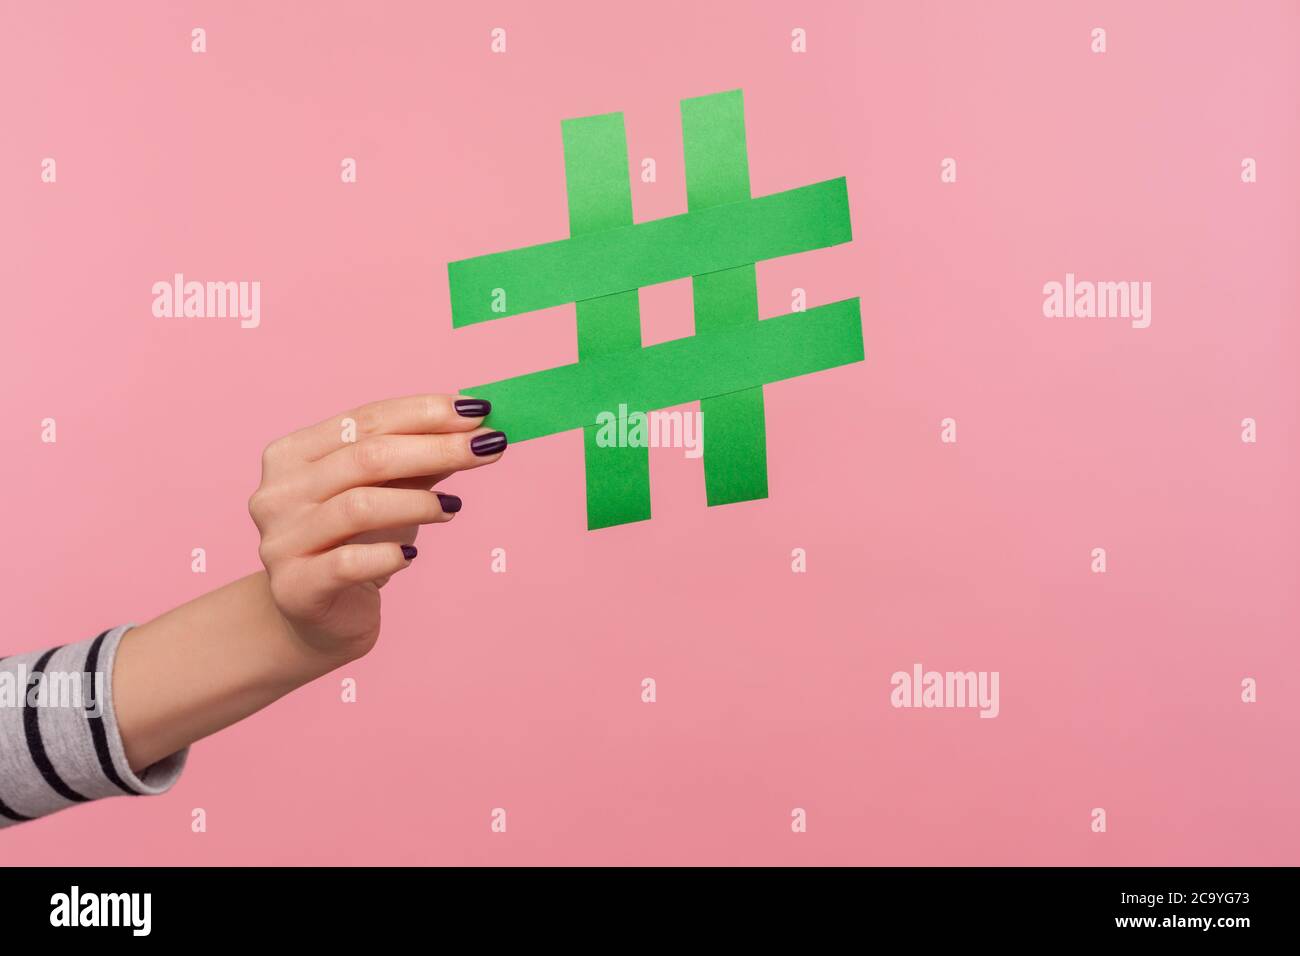 Gros plan main tenant grand papier vert hashtag signe, montrant symbole de hachage comme recommandation de suivre les tendances d'Internet, sujet viral blog, message célèbre. Banque D'Images